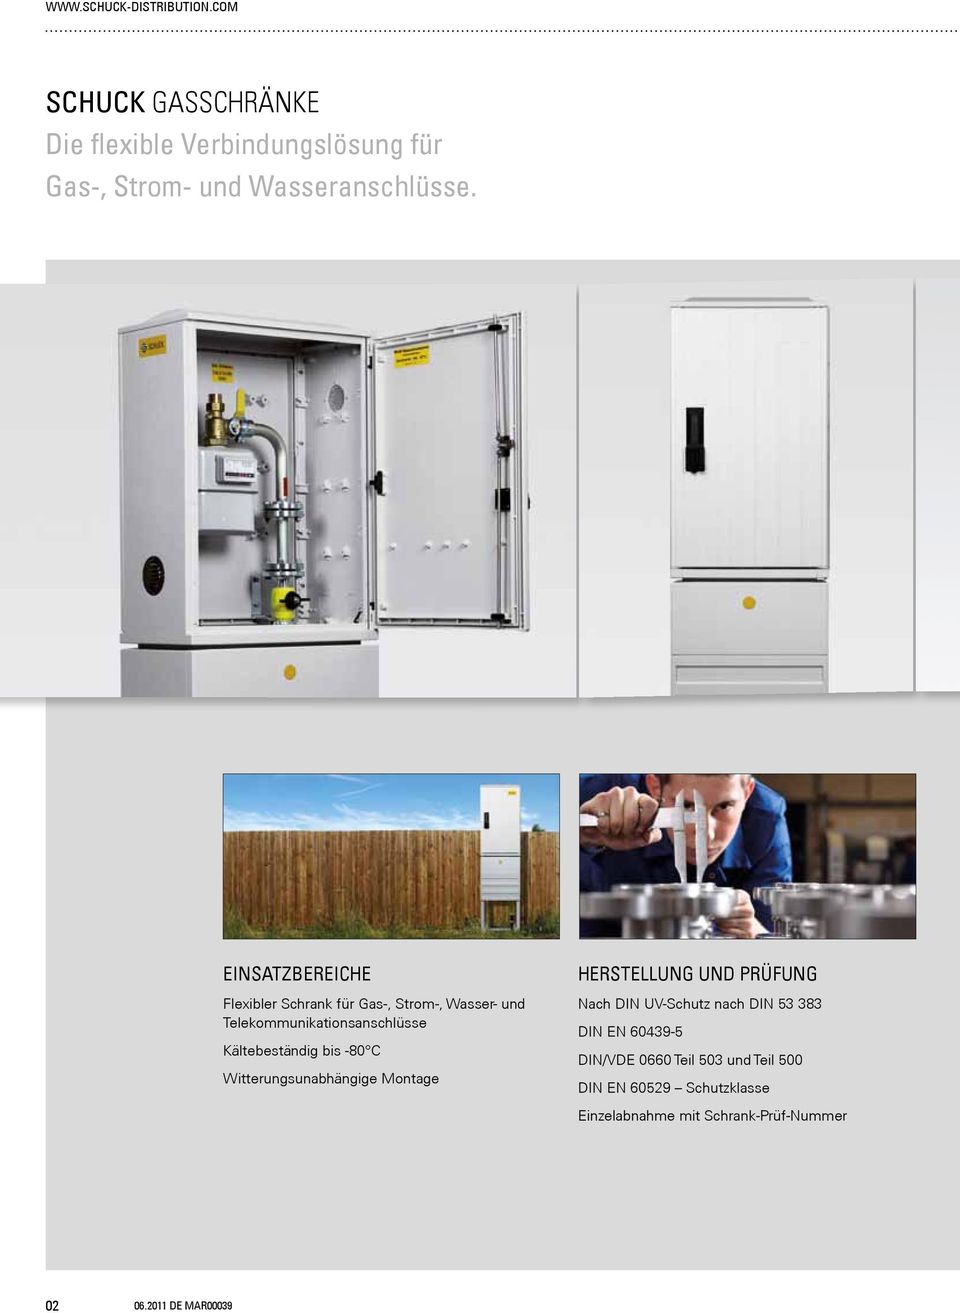 Einsatzbereiche Flexibler Schrank für Gas-, Strom-, Wasser- und Telekommunikationsanschlüsse Kältebeständig bis